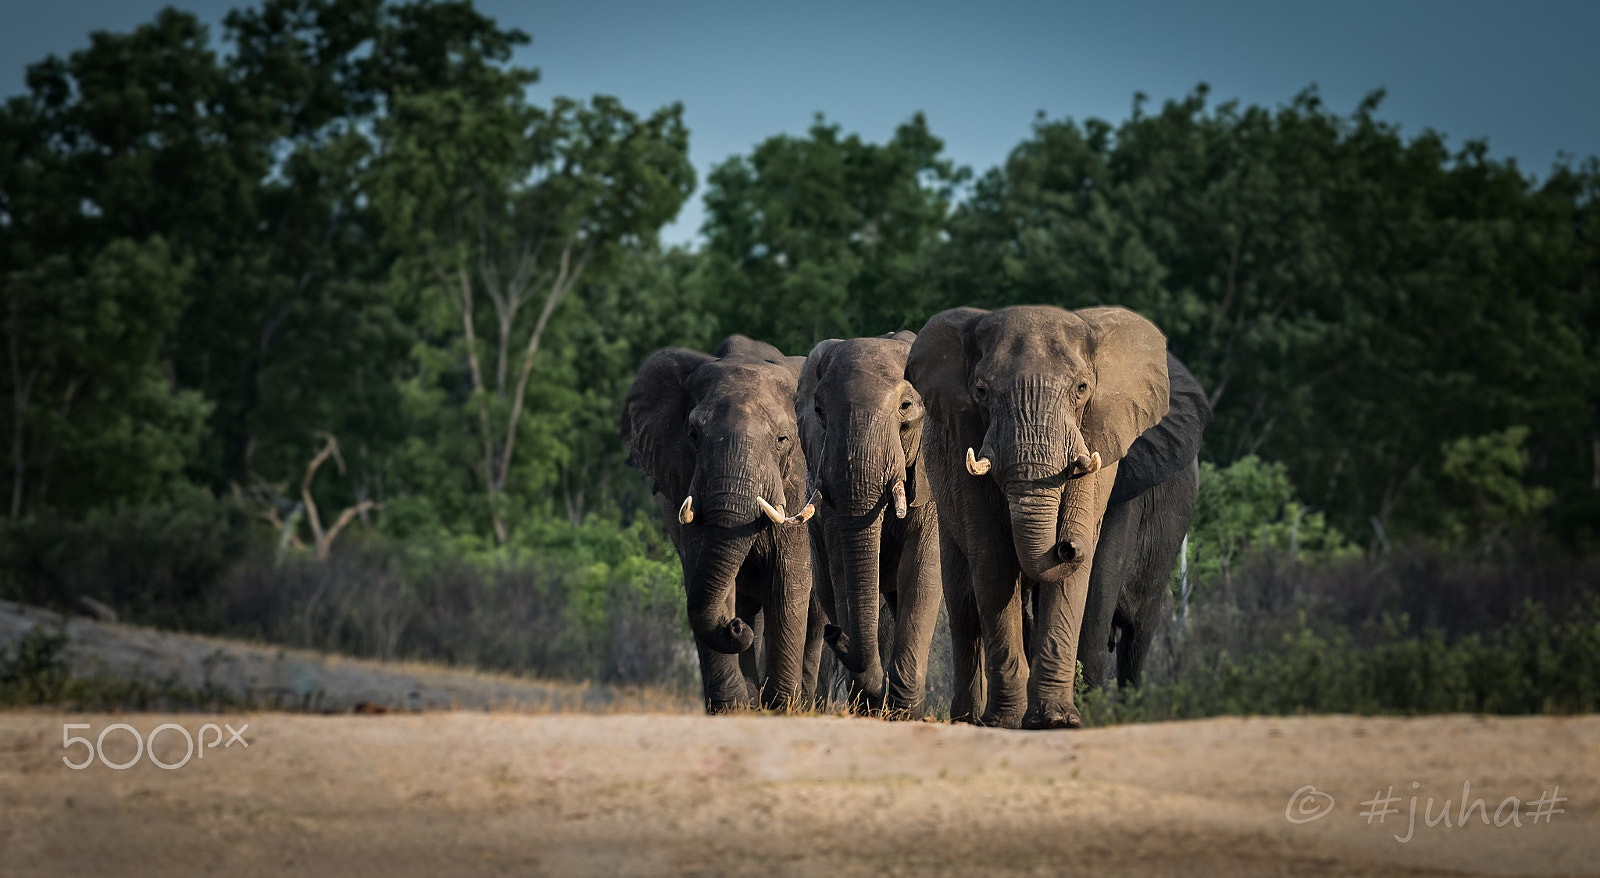 Nikon D810 sample photo. Elephant hawnge np zimbabwe photography